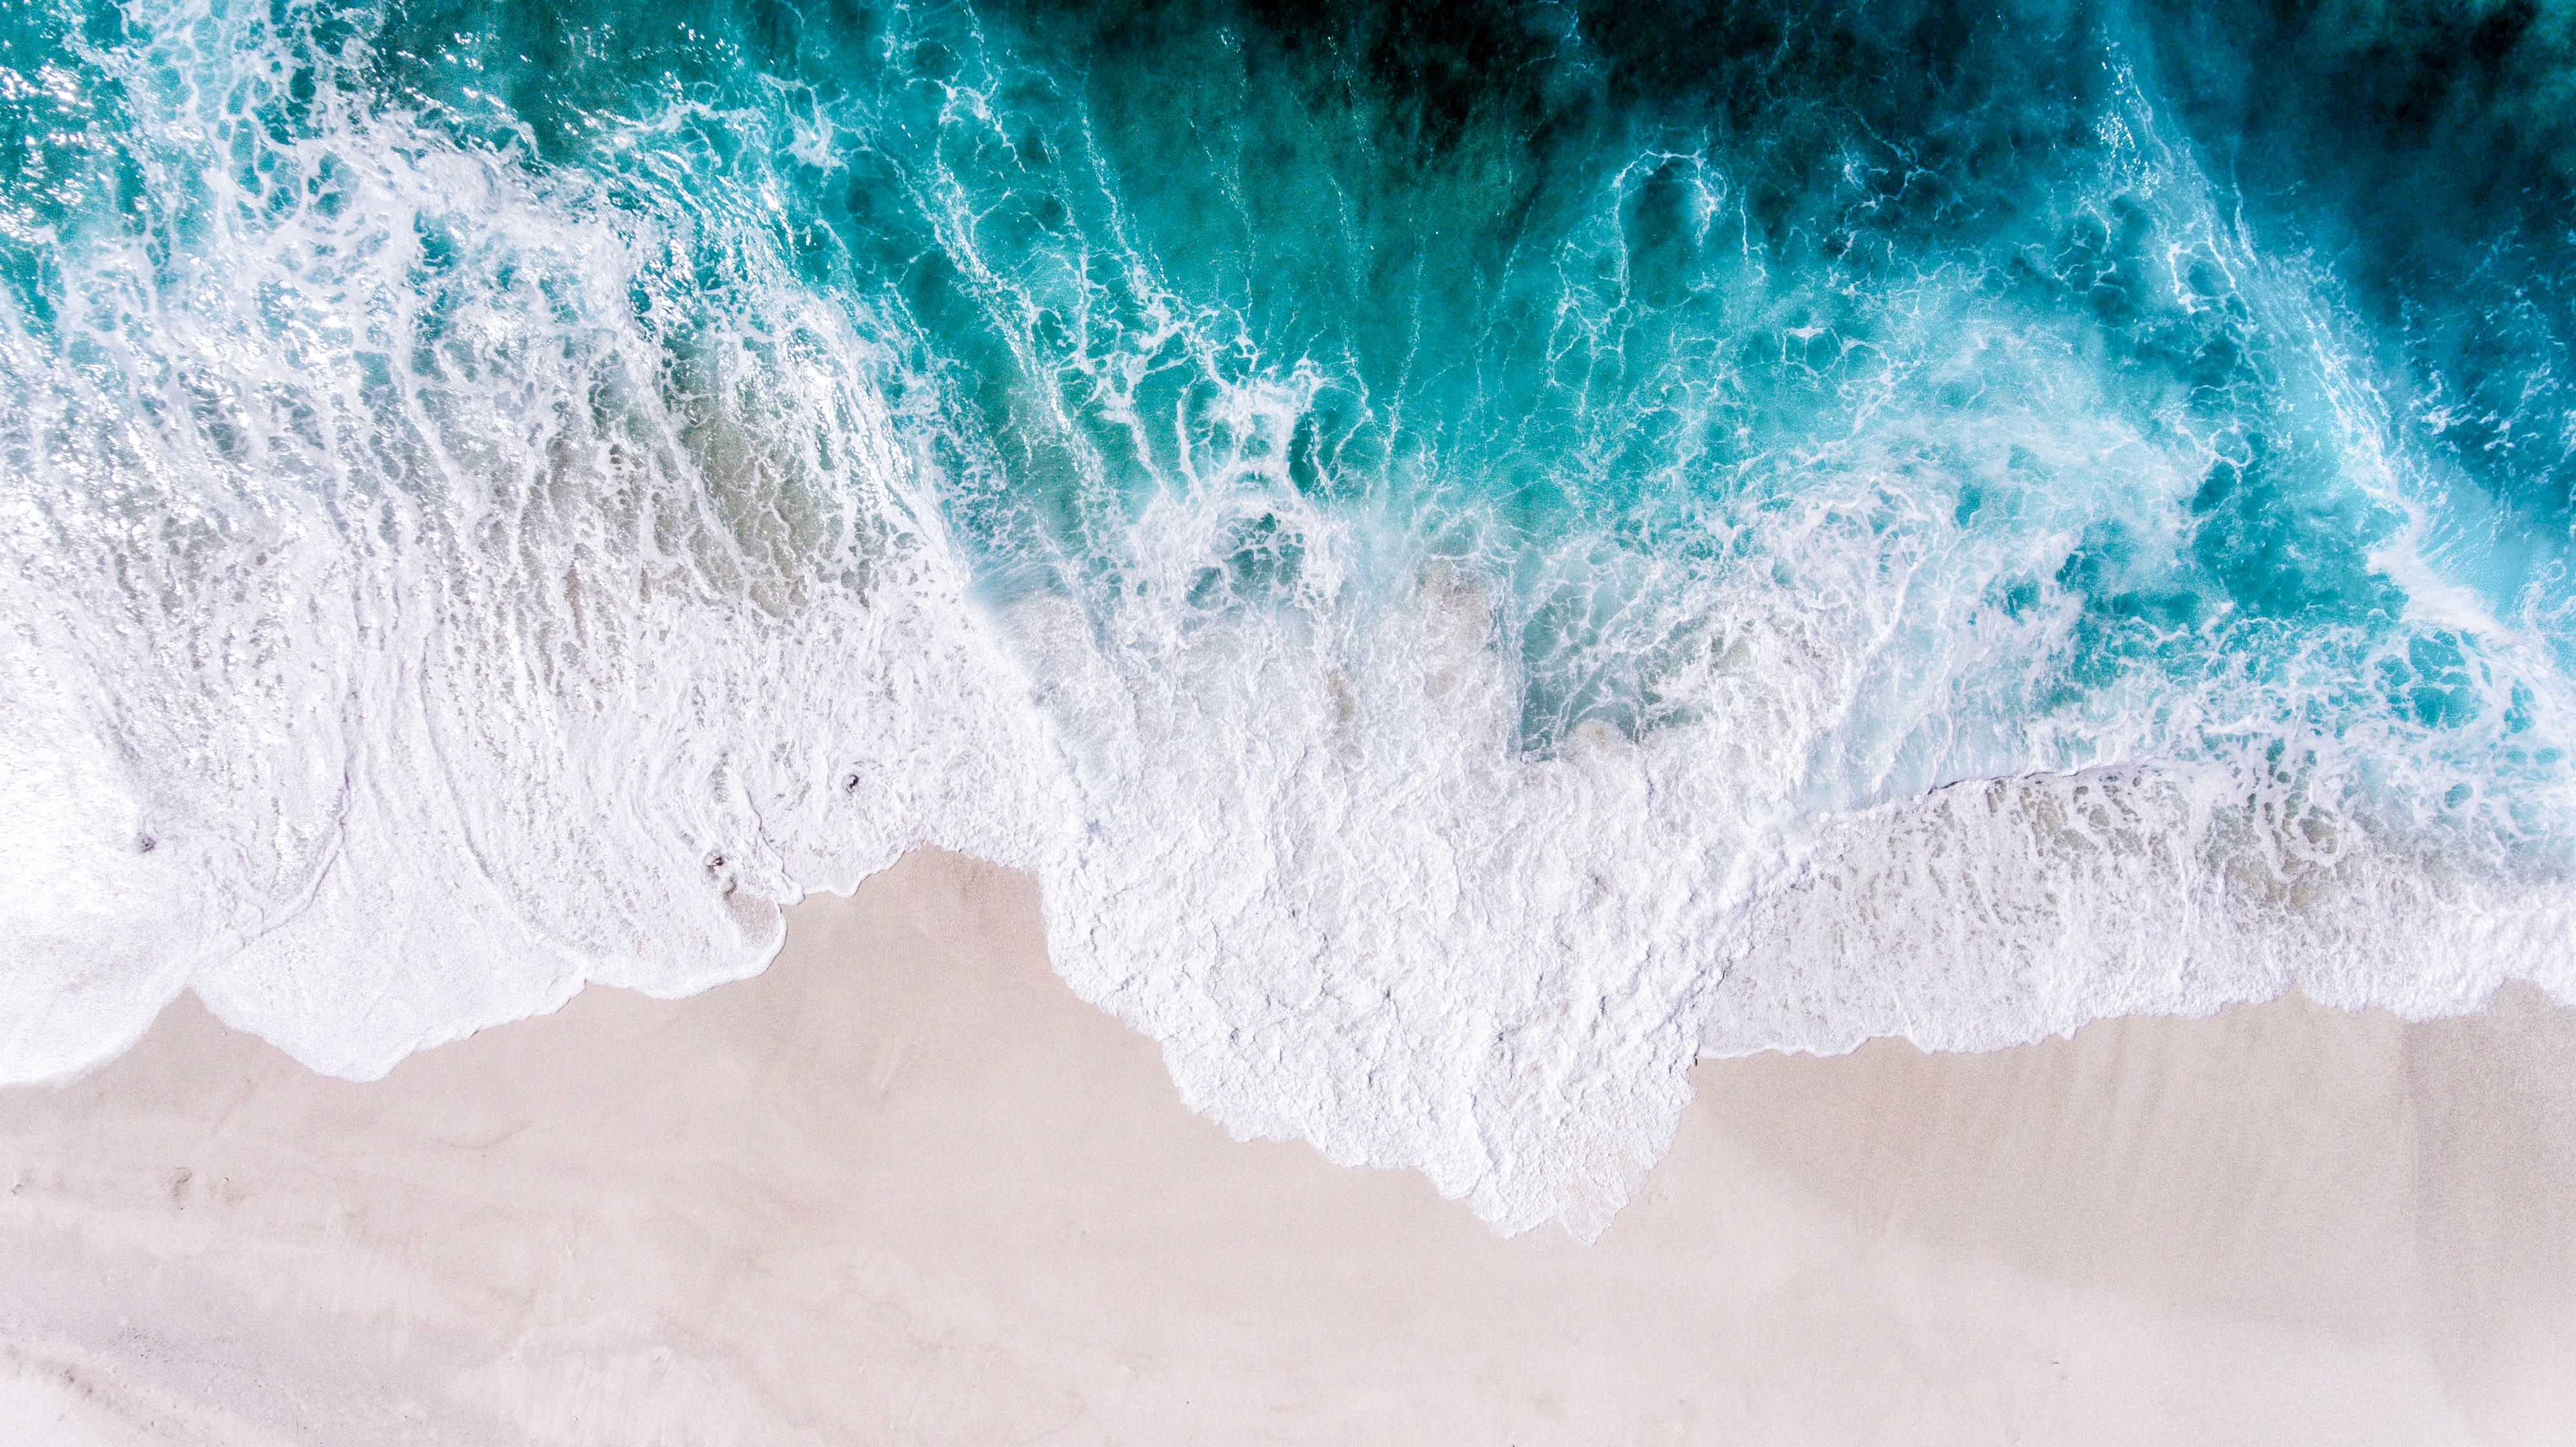 Aerial View Of Ocean Waves 3992x2242 Wallpaper